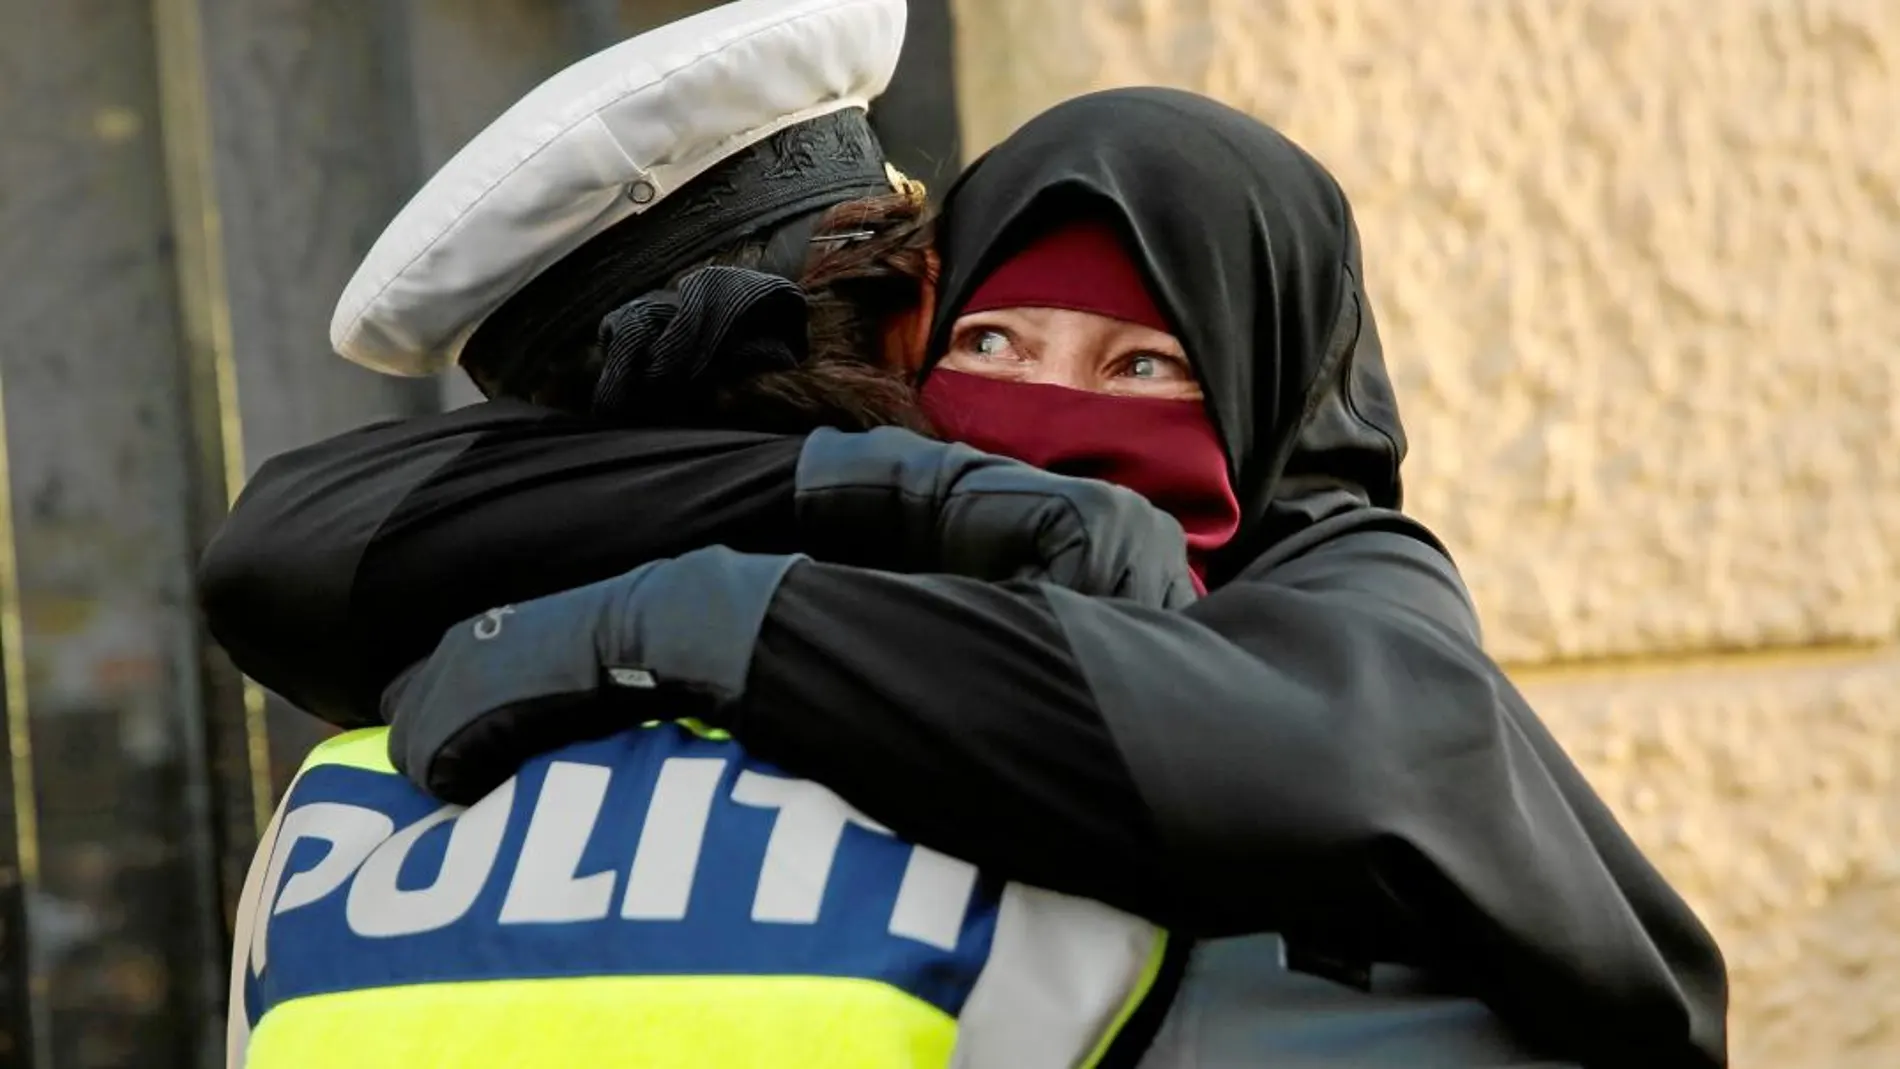 Ayah, de 37 años, durante una protesta contra del veto al niqab en Conpenhague, el miércoles